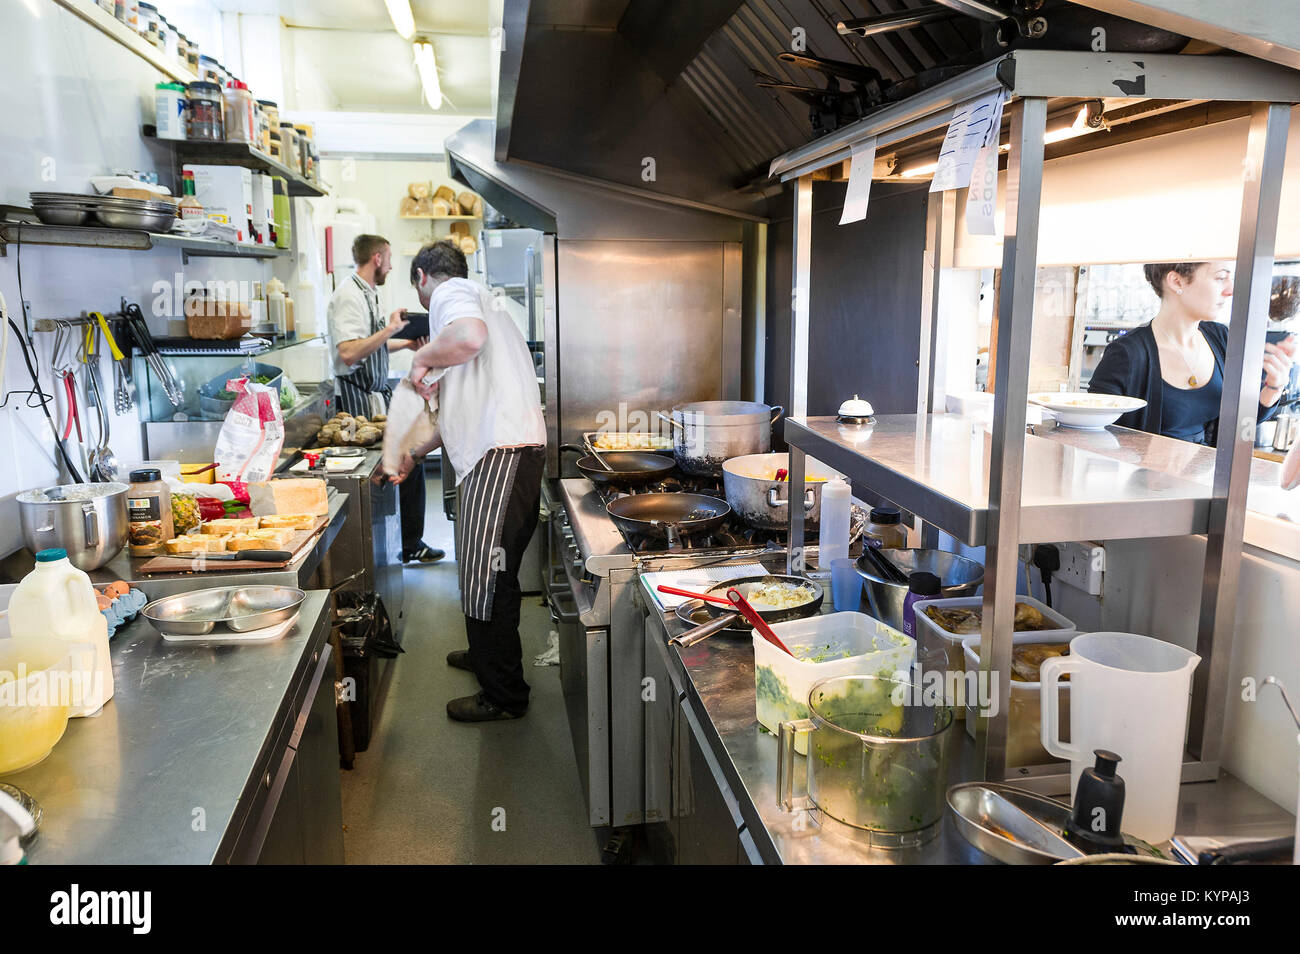 La préparation des aliments - chefs travaillant dans une cuisine de restaurant. Banque D'Images